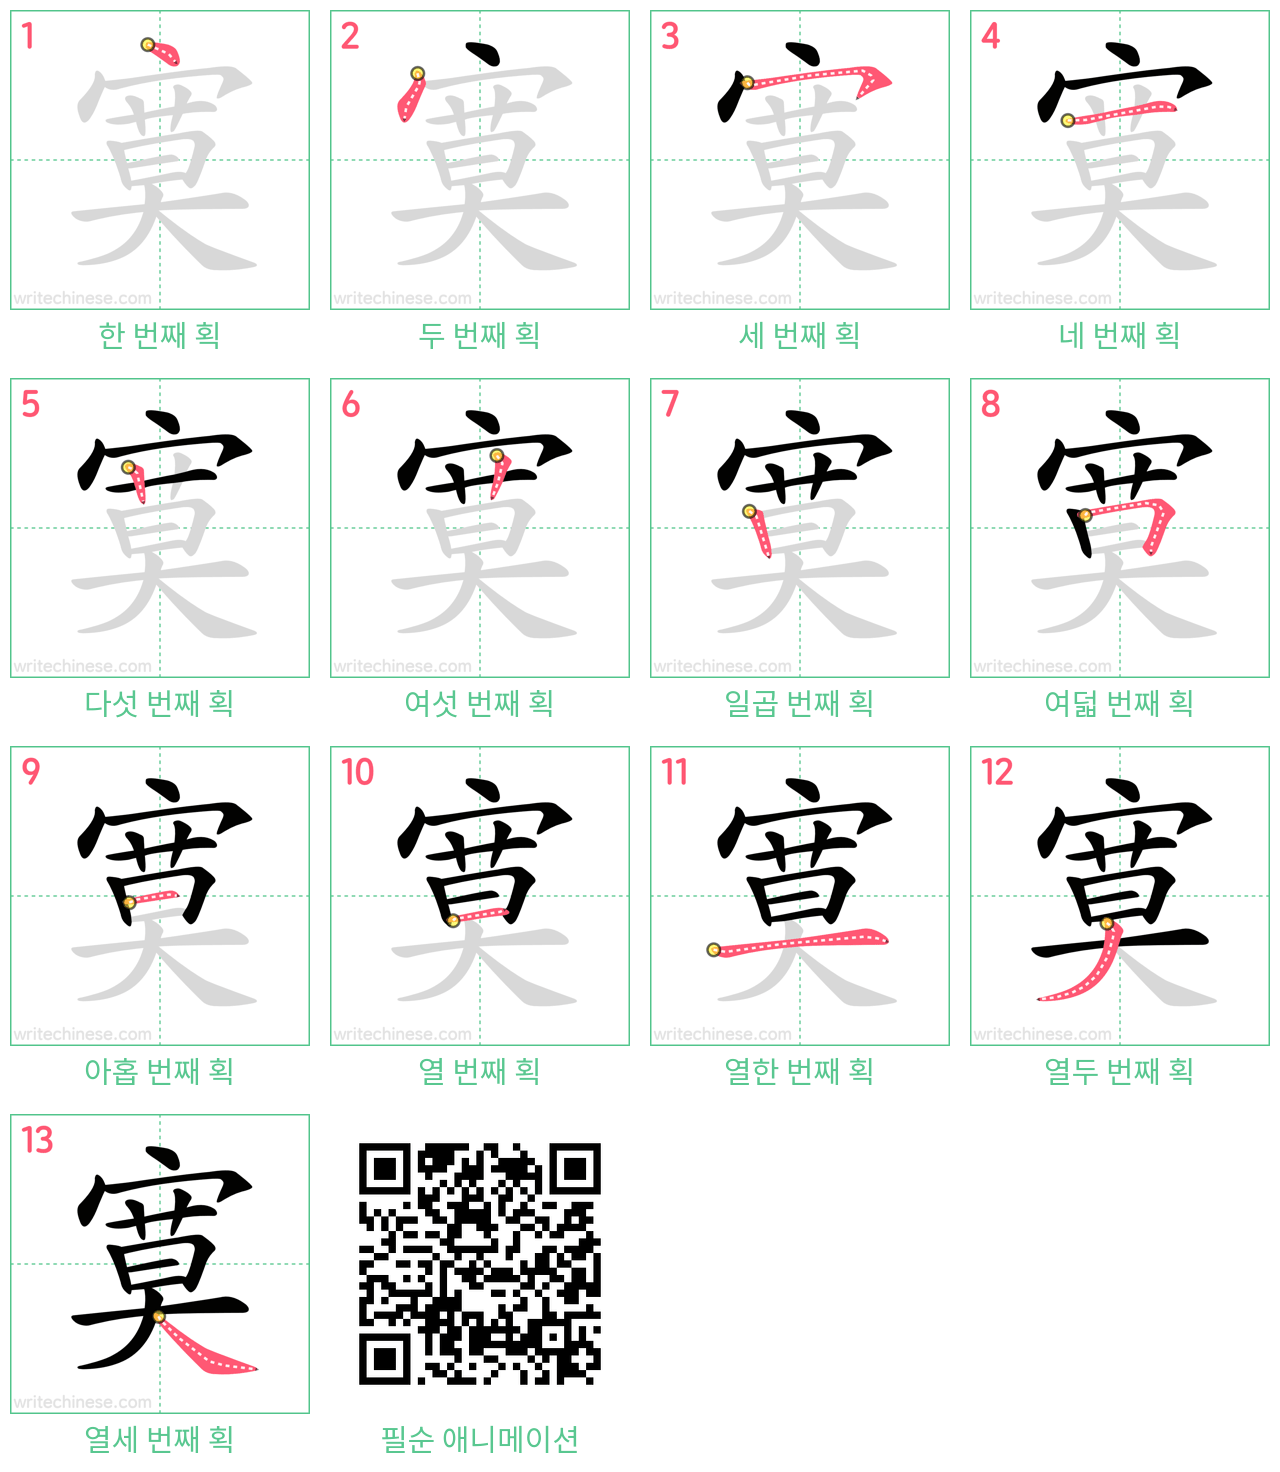 寞 step-by-step stroke order diagrams